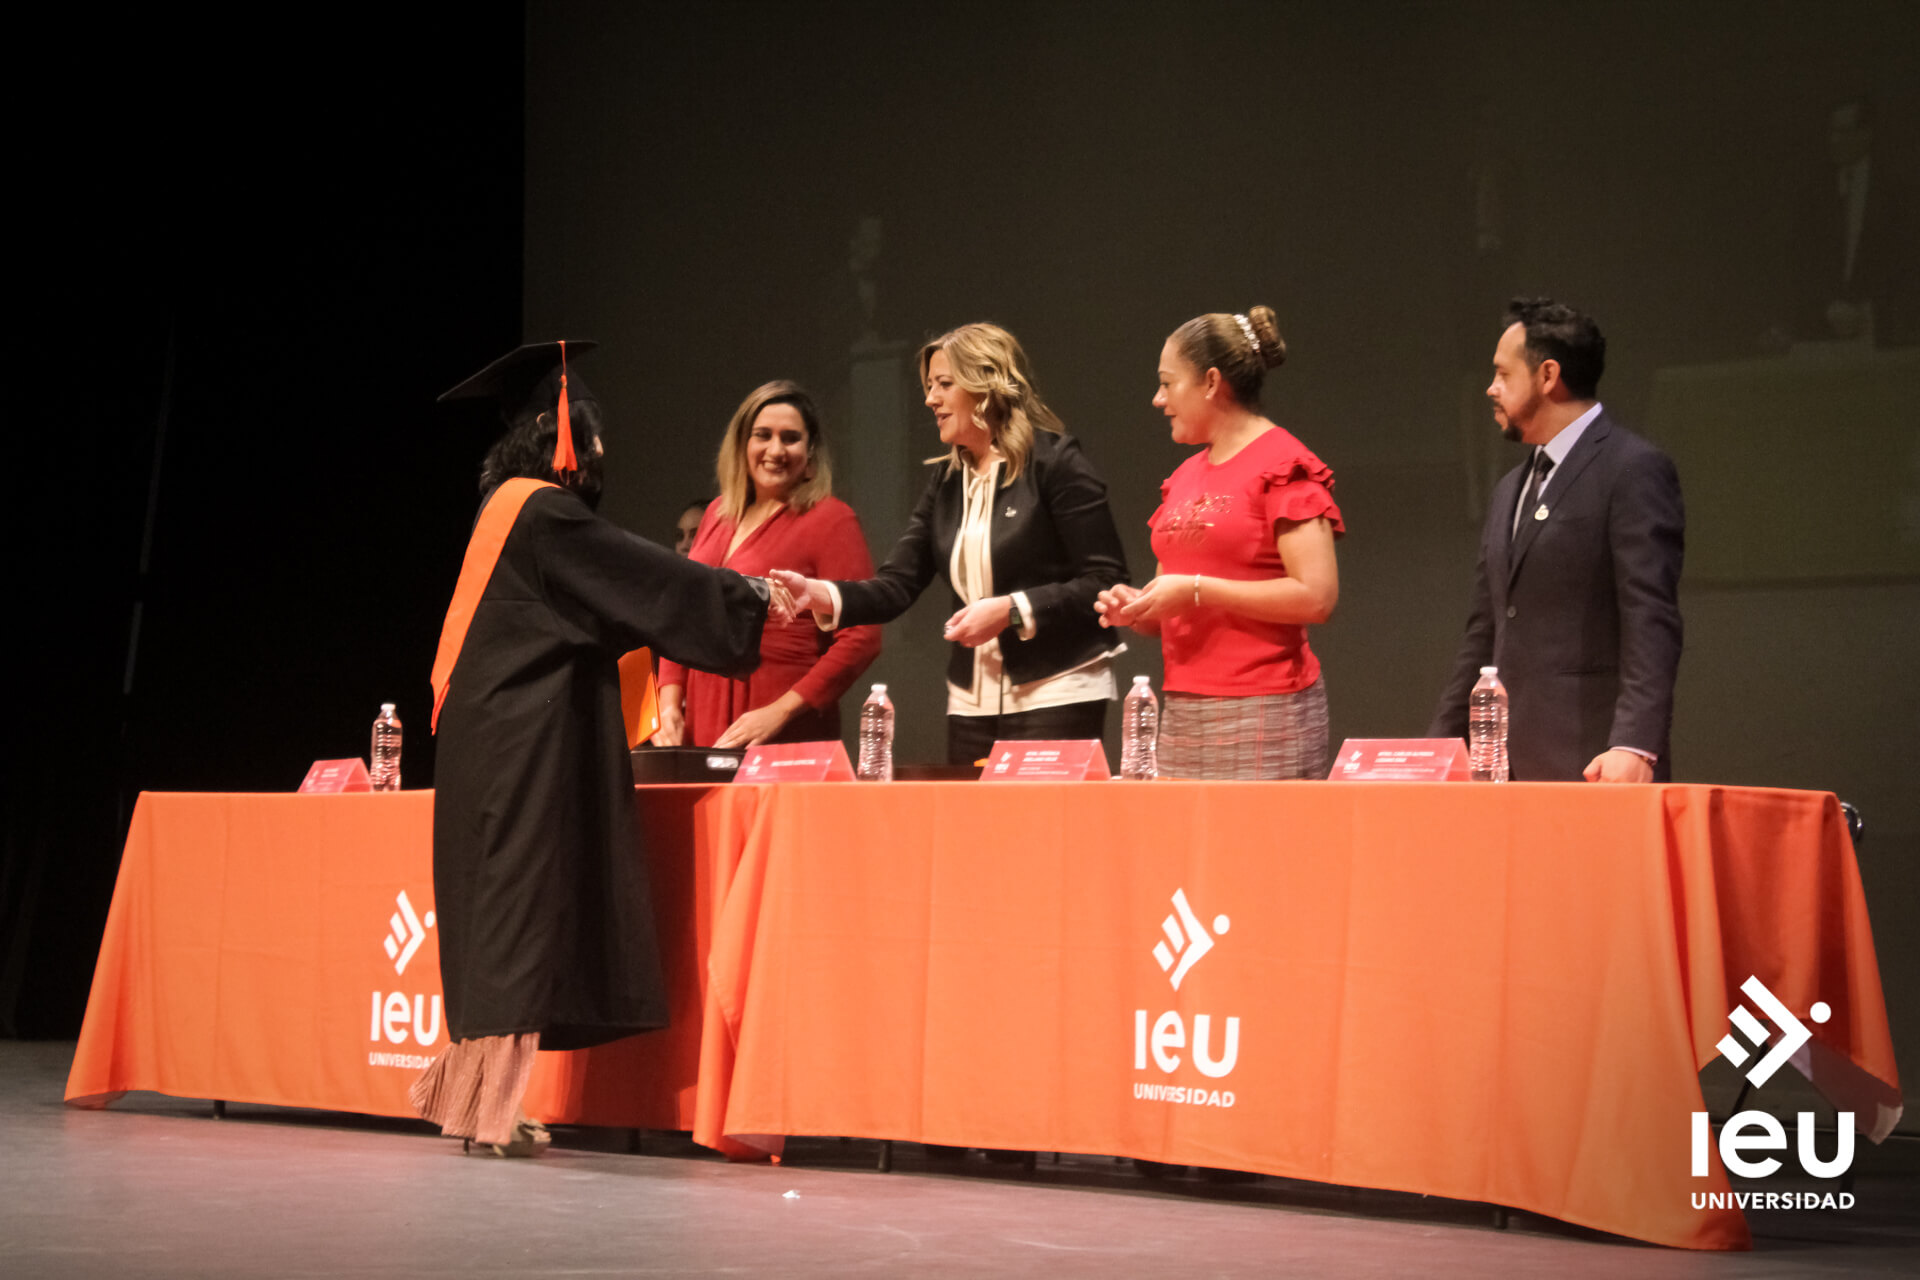 Universidad Ieu Graduacion 2019 8